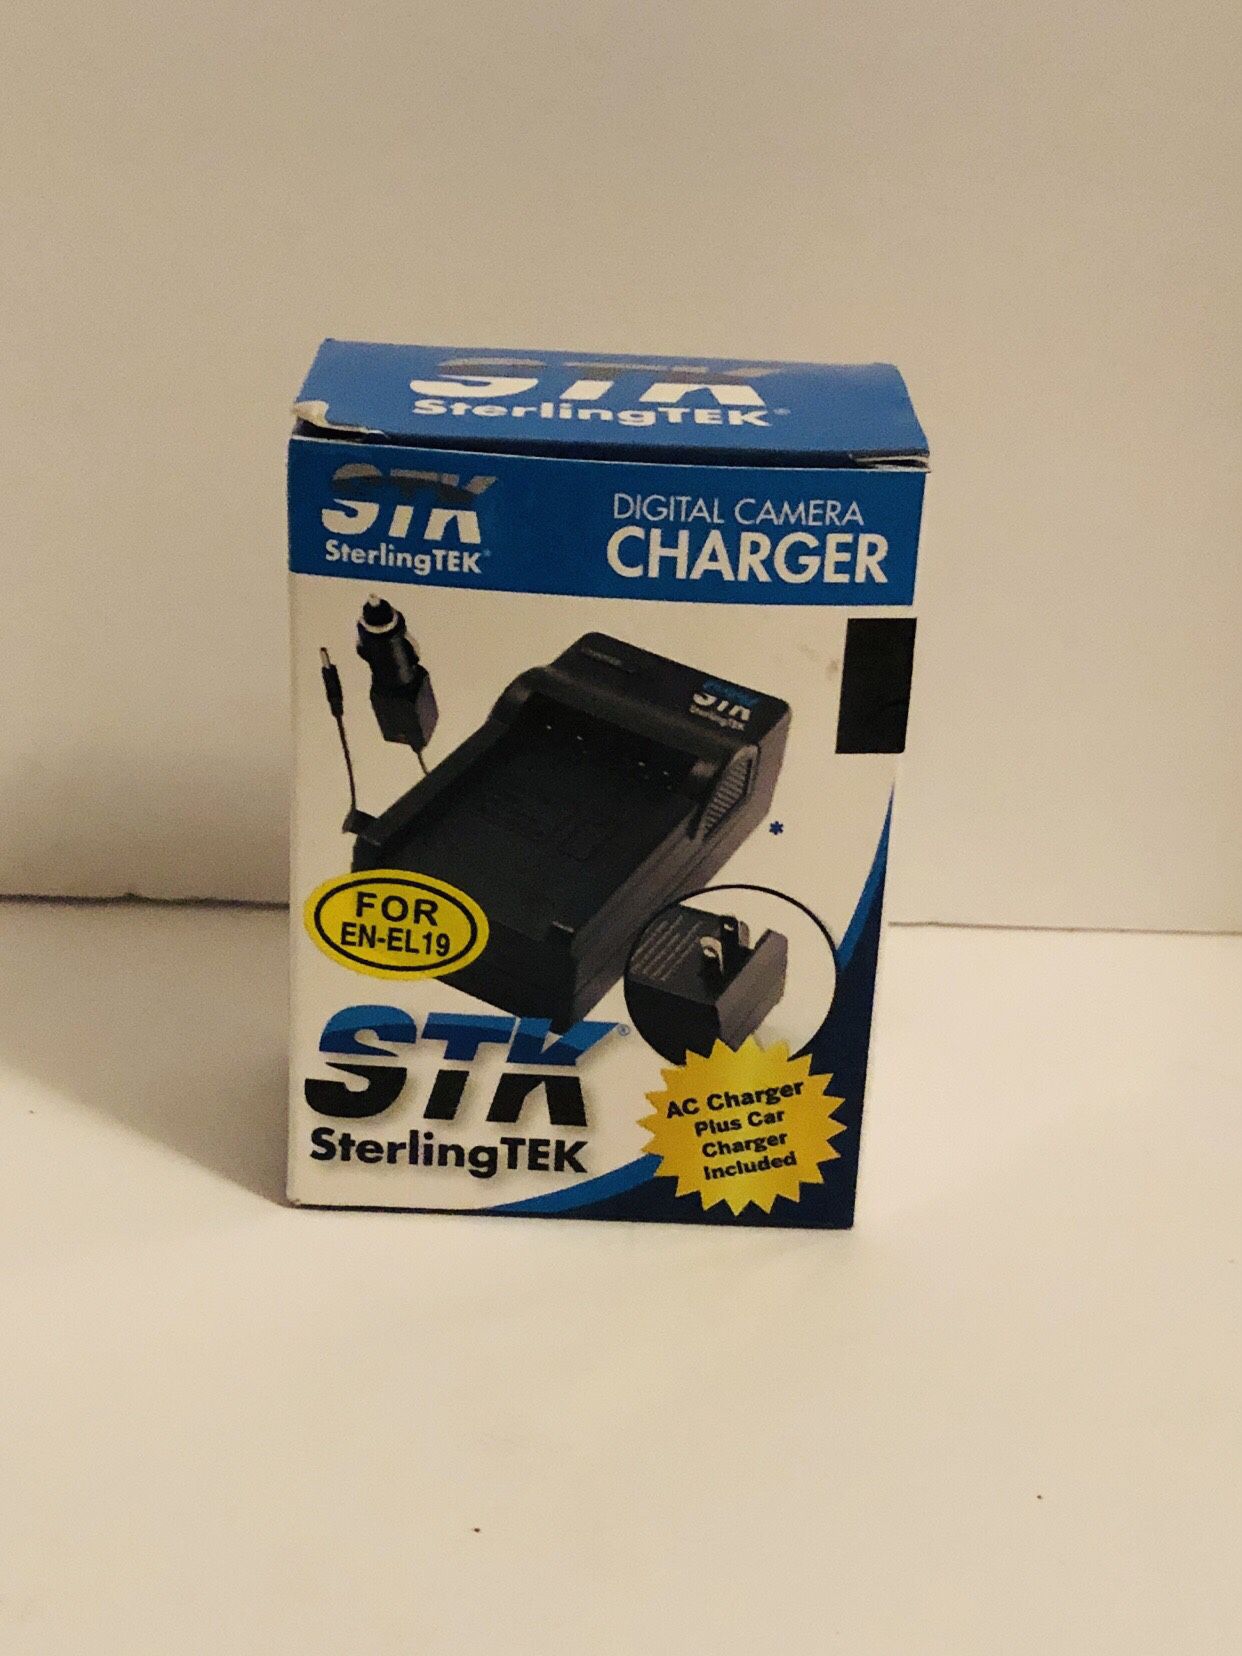 STK Sterling TEK Digital camera Charger